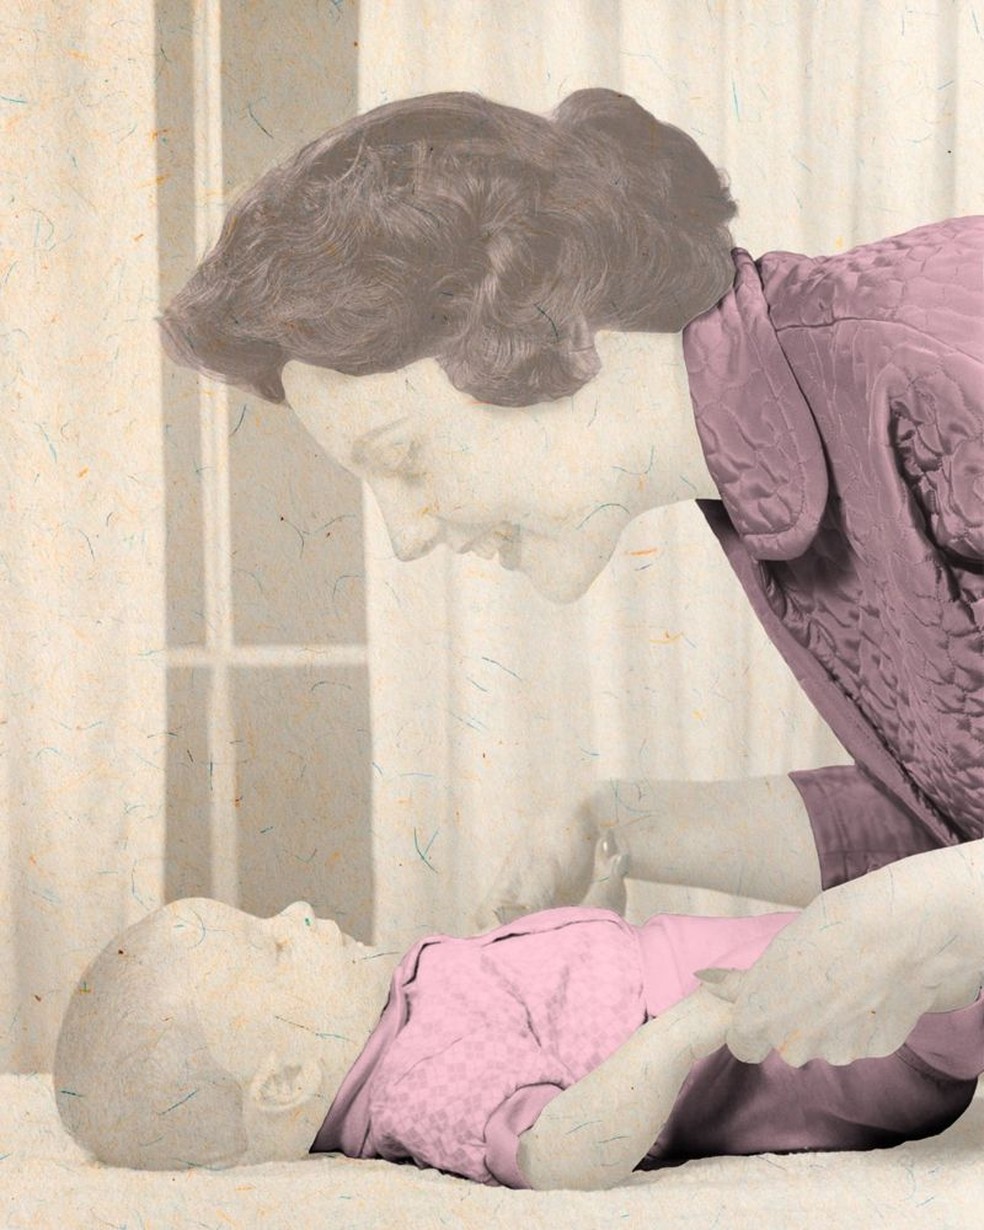 Há algumas evidências que sugerem que as mães conversam mais com as filhas mulheres, o que melhora o desenvolvimento da linguagem — Foto: Javier Hirschfeld/Getty Images via BBC